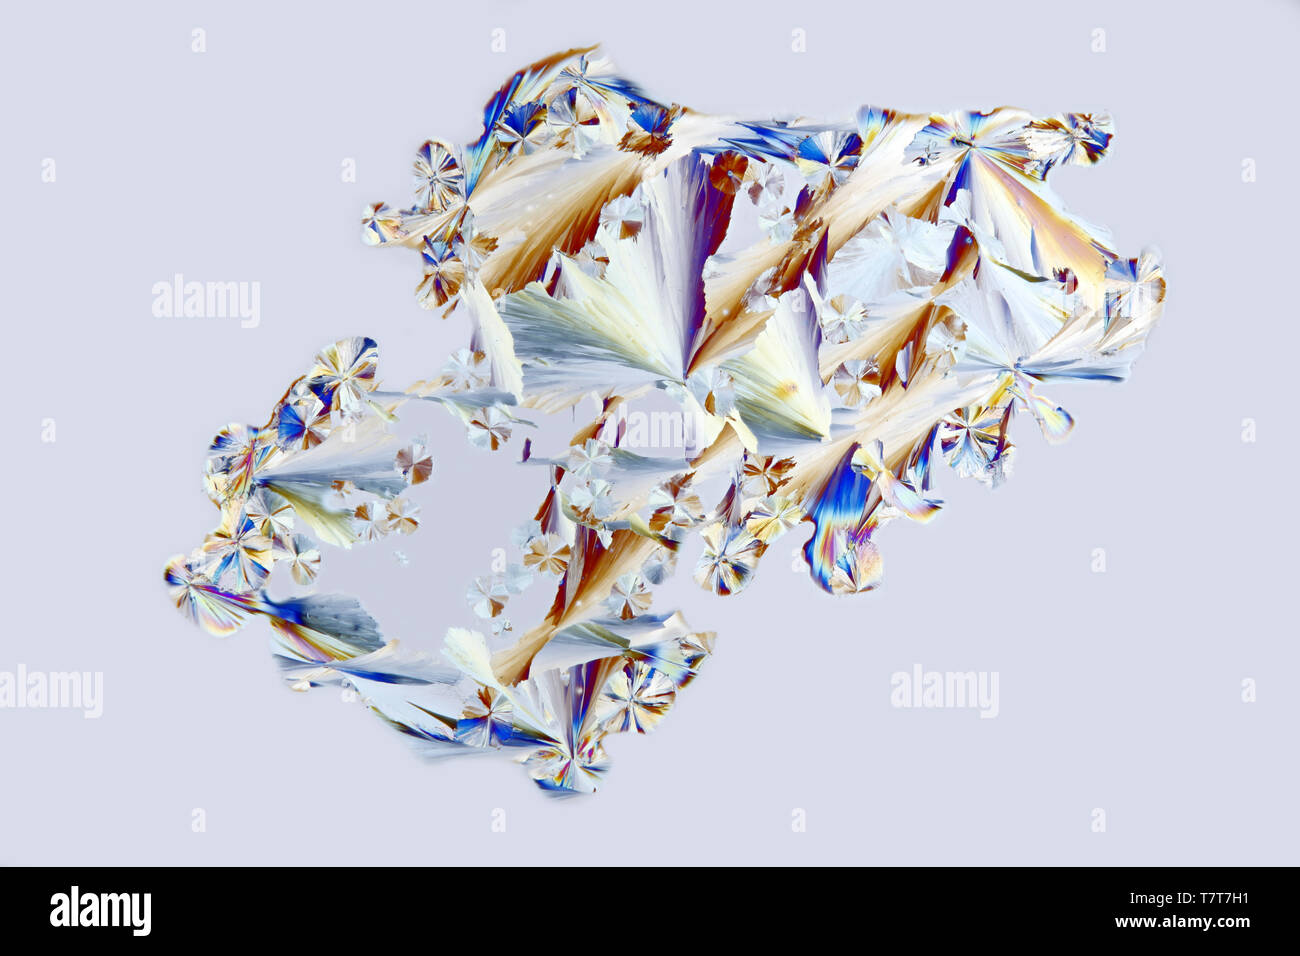 Kristalle von Zitronensäure, eine gemeinsame Konservierungsmittel Stockfoto